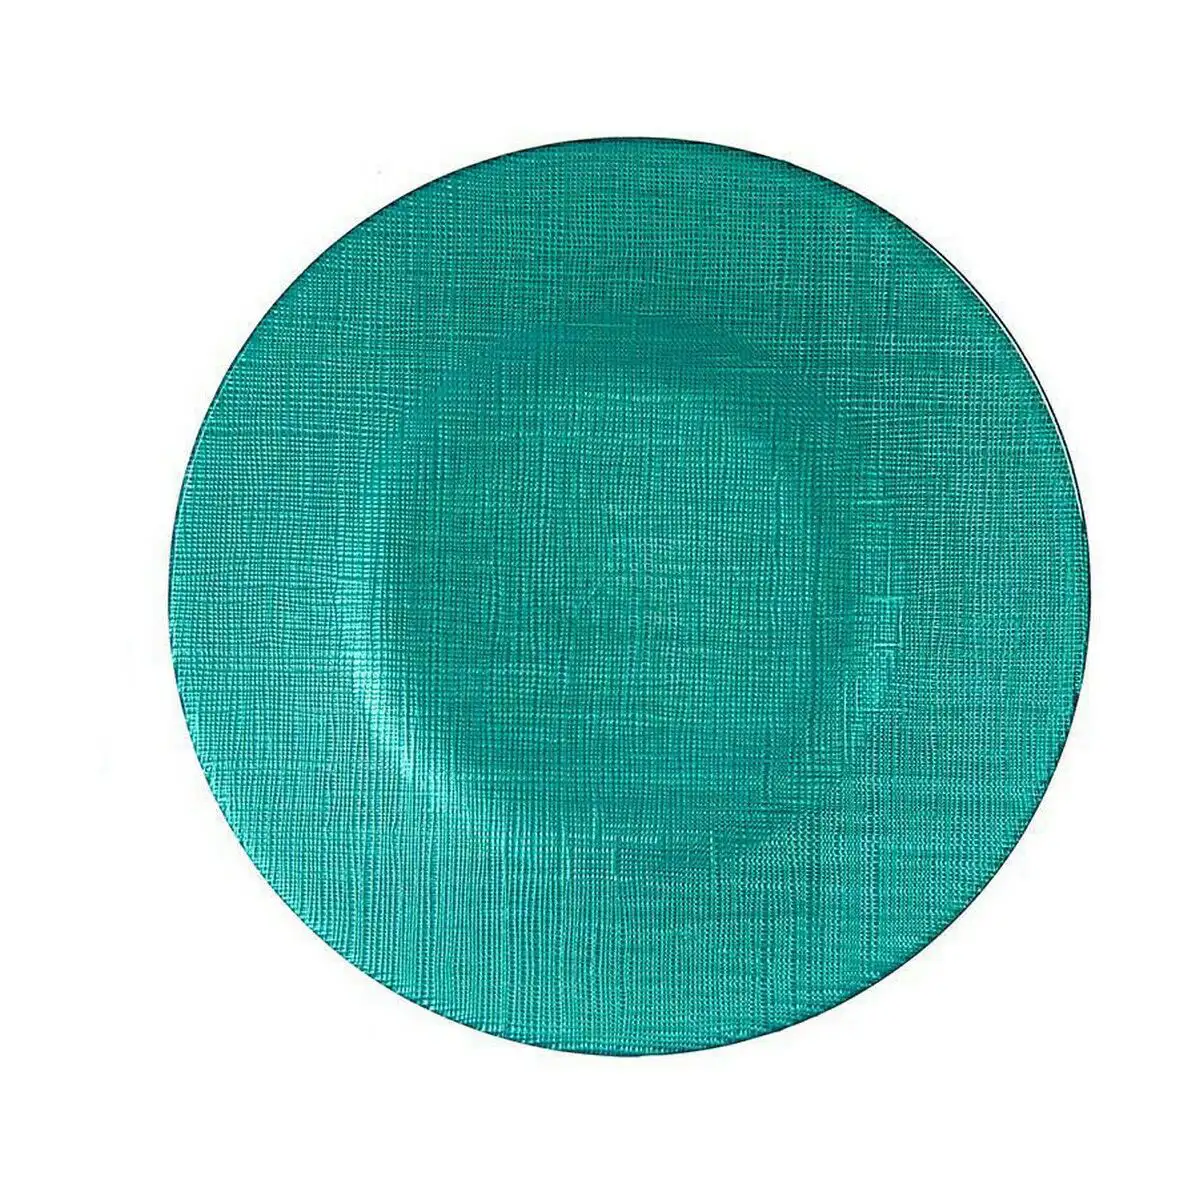 Assiette plate turquoise verre 6 unites 21 x 2 x 21 cm _2001. DIAYTAR SENEGAL - Votre Source de Trouvailles uniques. Naviguez à travers notre catalogue et trouvez des articles qui vous distinguent et reflètent votre unicité.